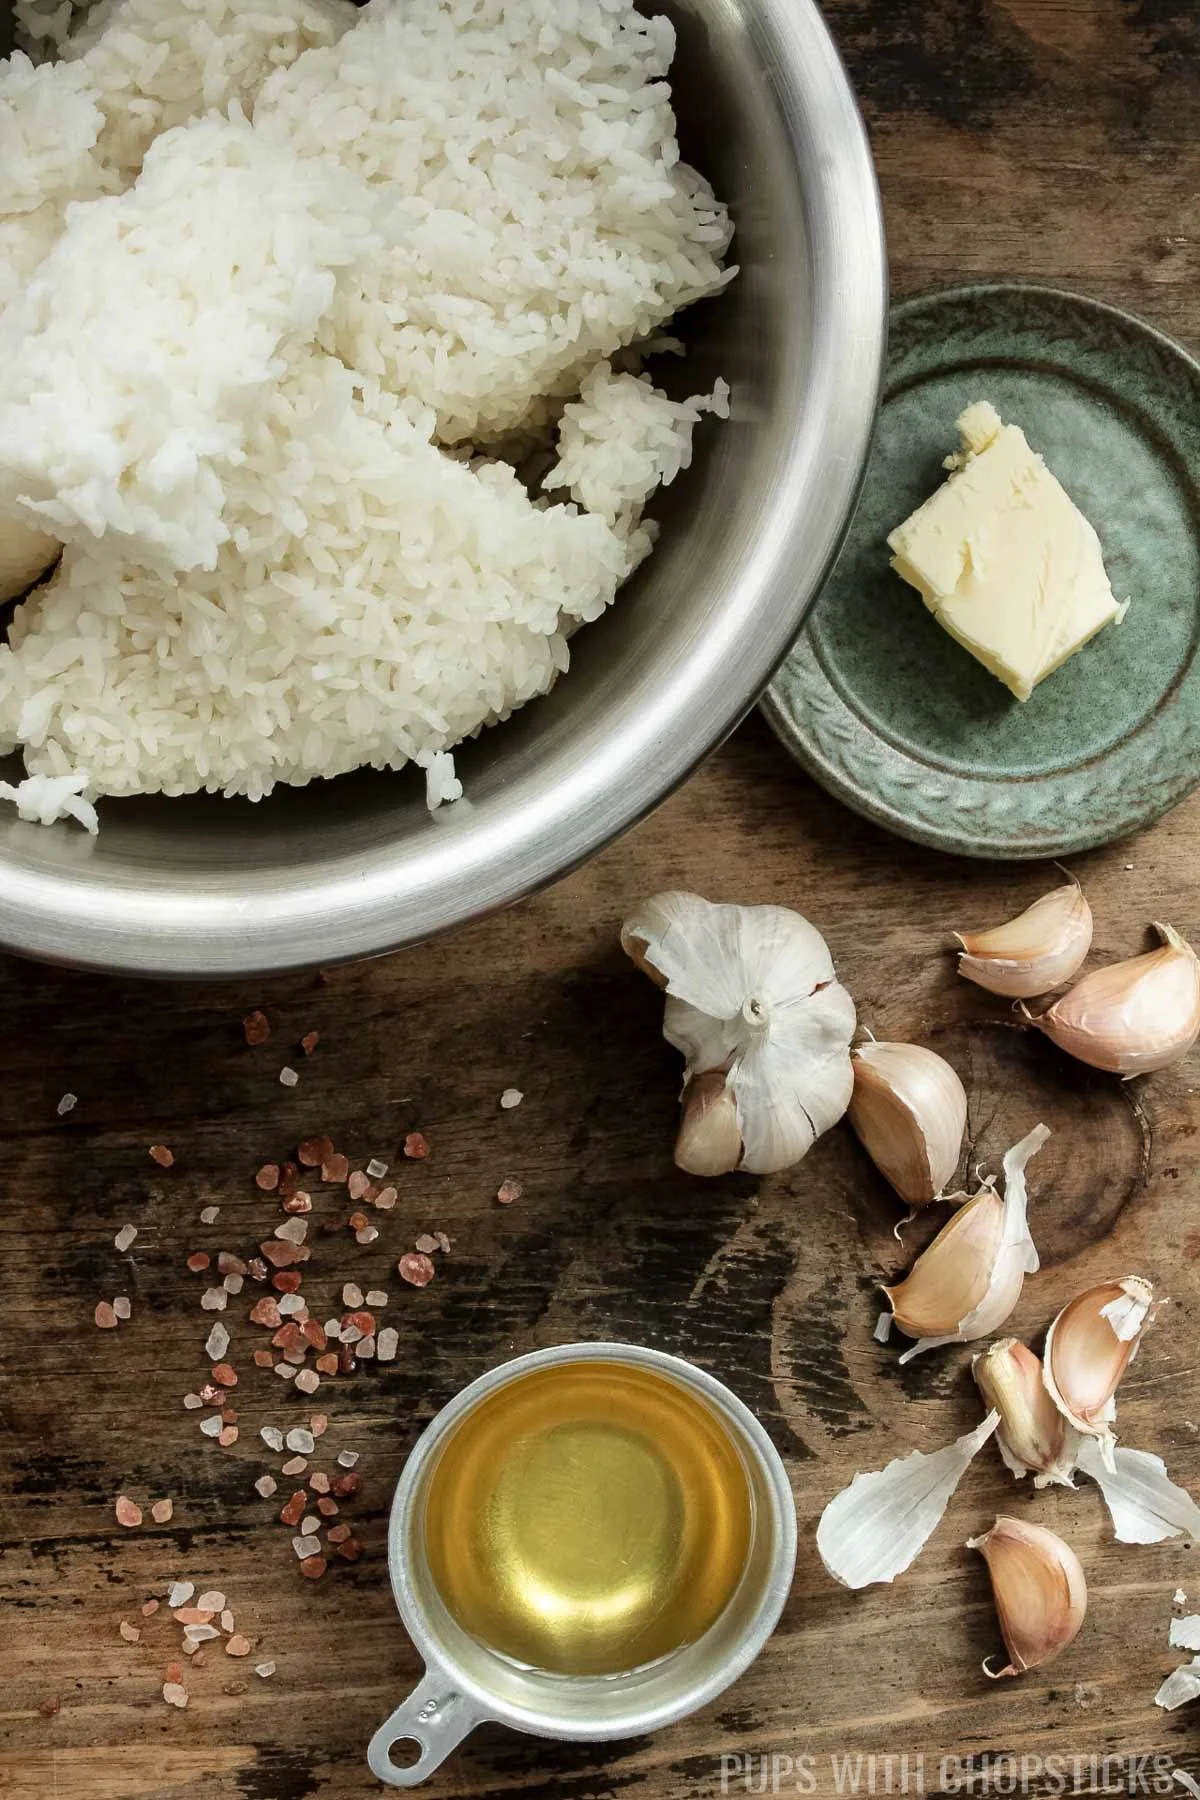 Ingredients for garlic fried rice/sinangag (garlic, cooked rice, oil, butter, salt